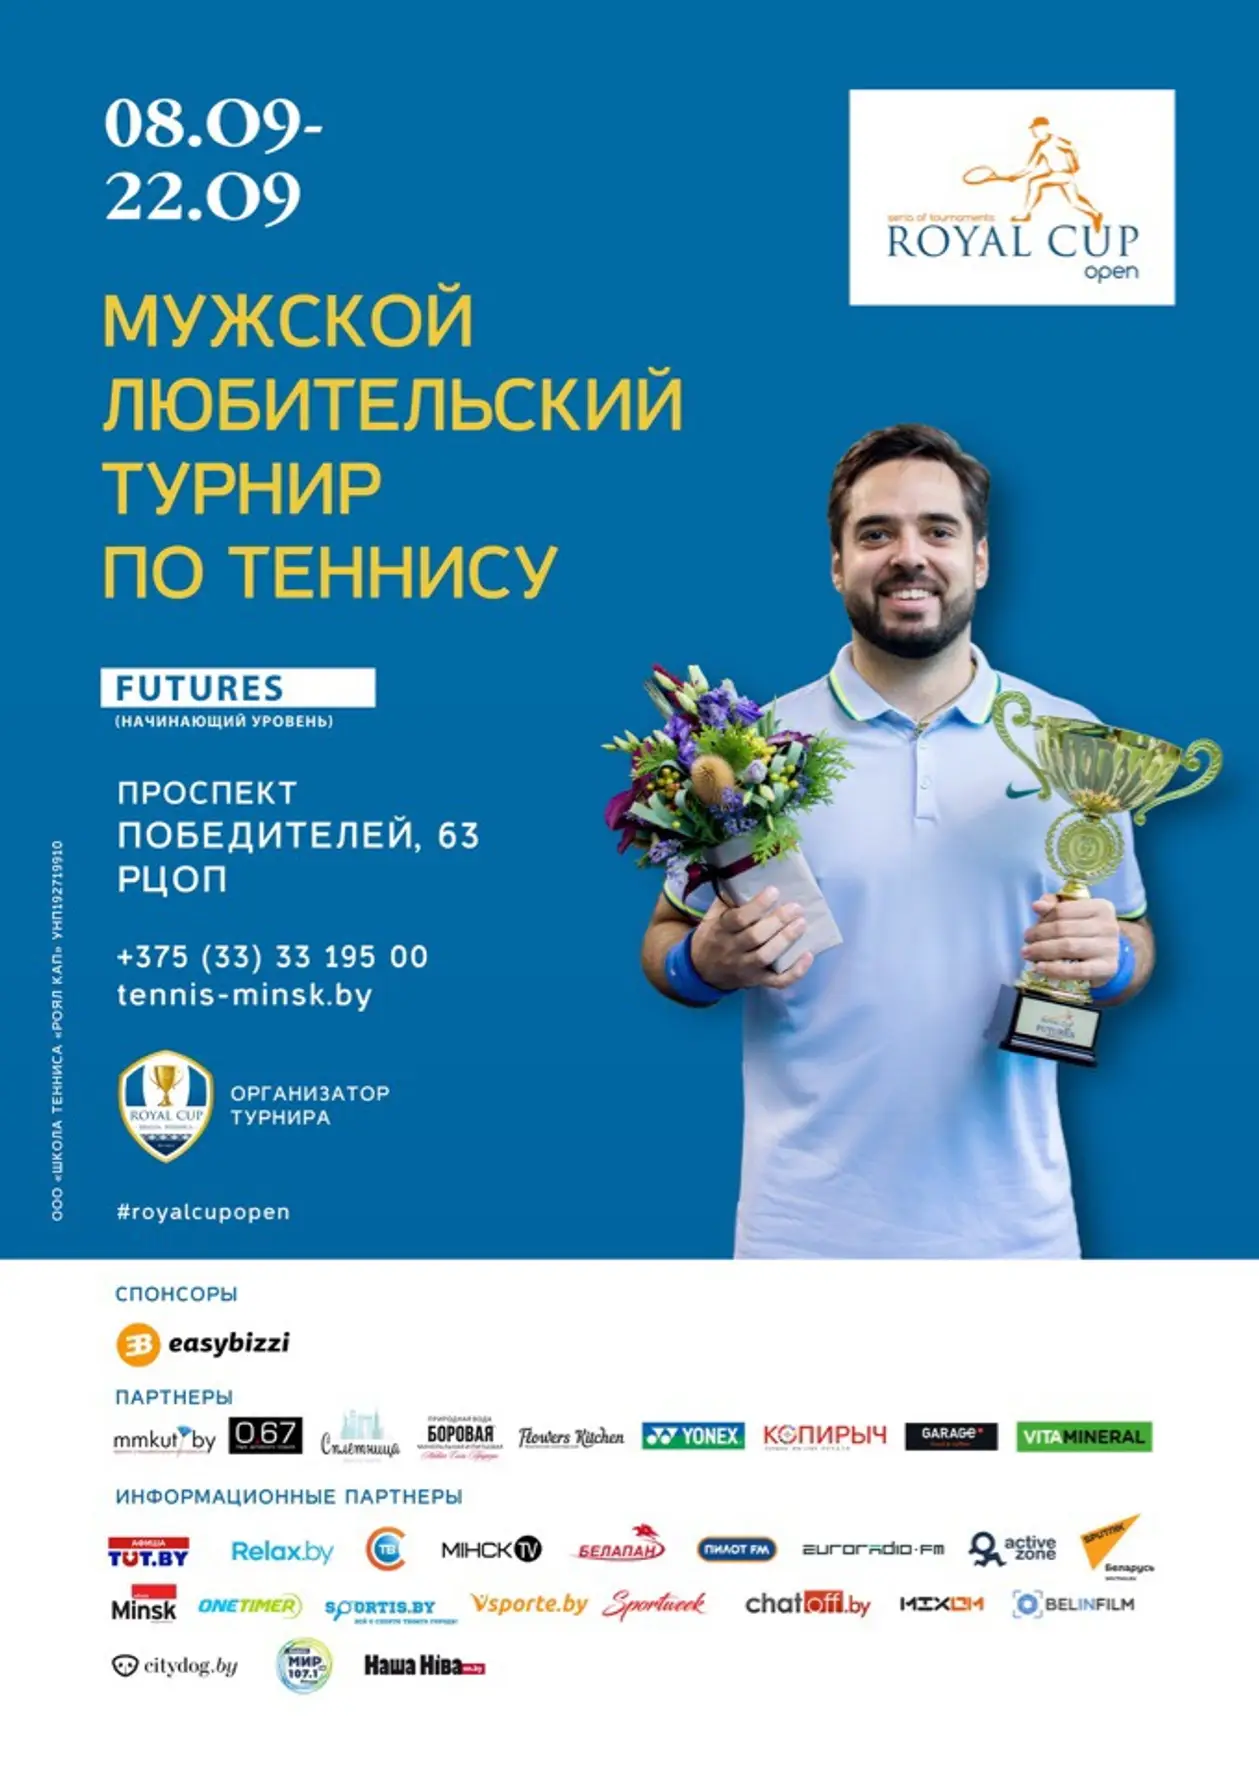 8-22 сентября в Минске начнётся мужской турнир по теннису Royal Cup Open категории FUTURES